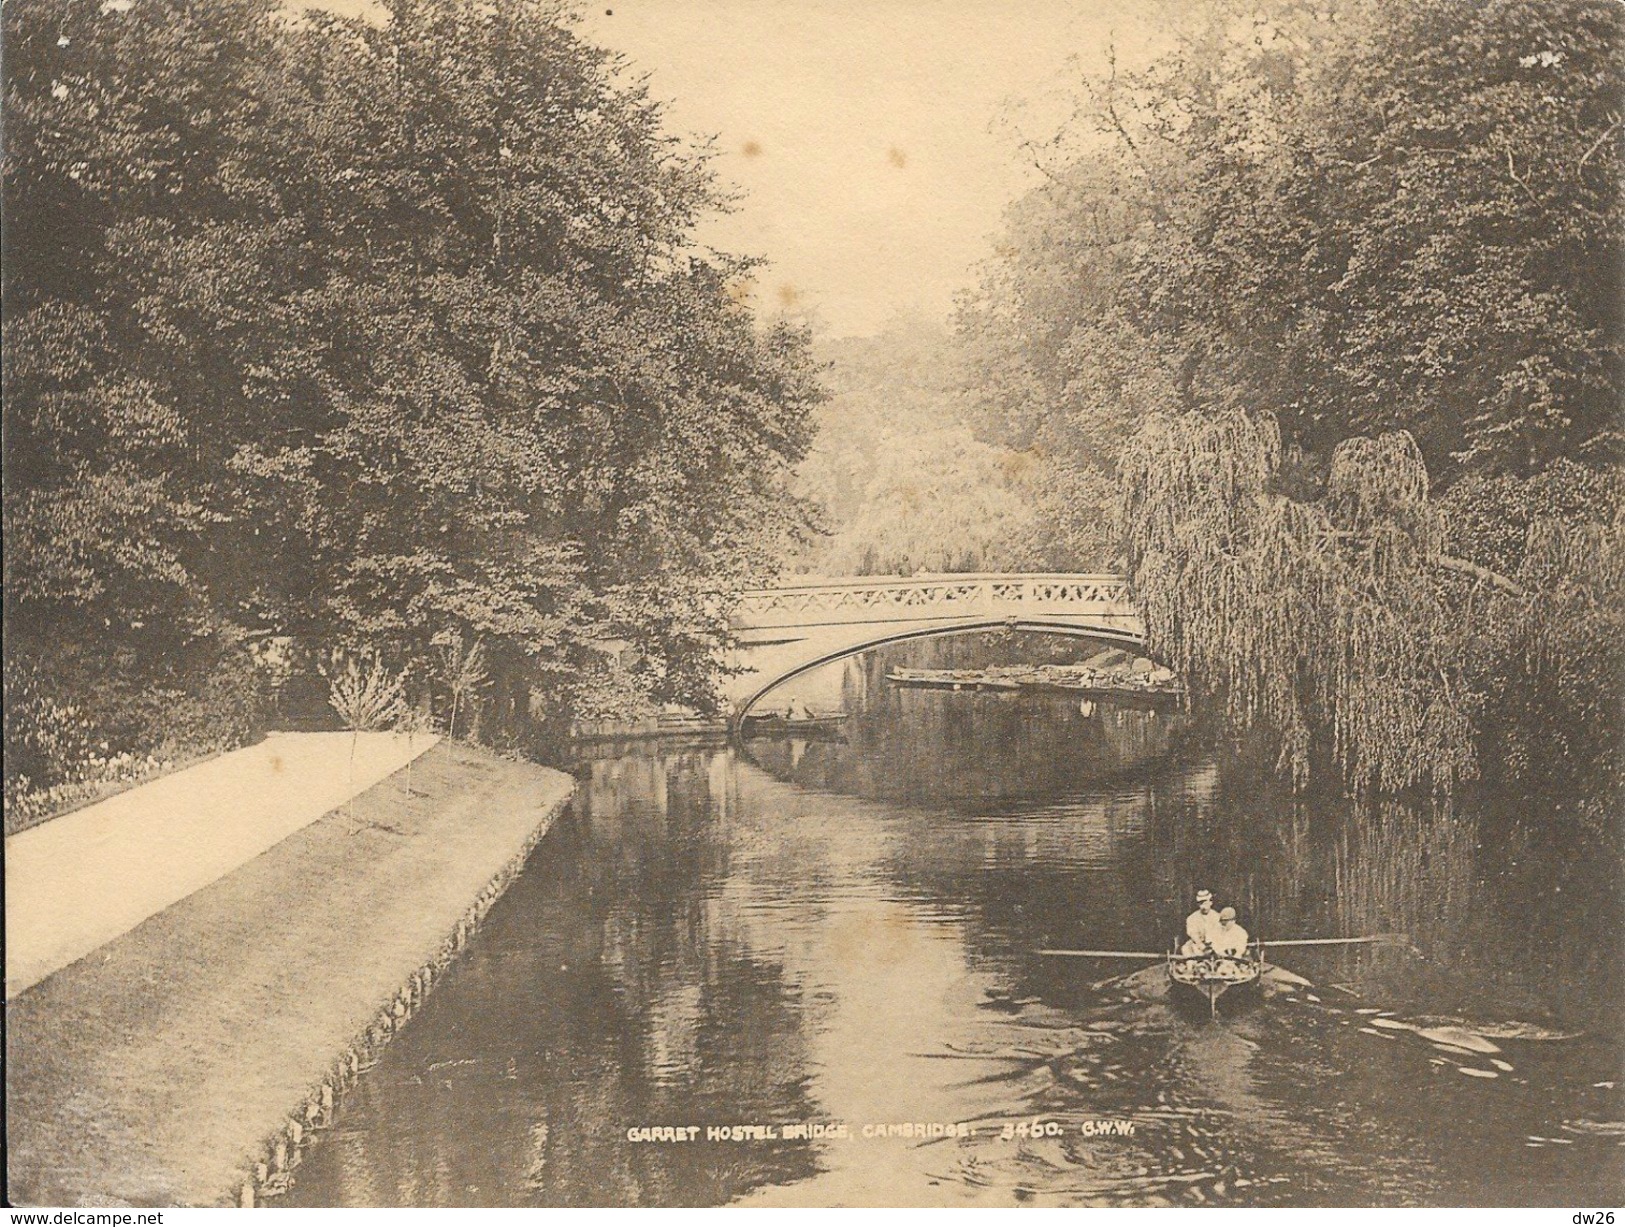 Photo Sépia De Cambridge (15 X 20 Cm) - Garret Hostel Bridge - G.W.W. N° 3460 - Lieux